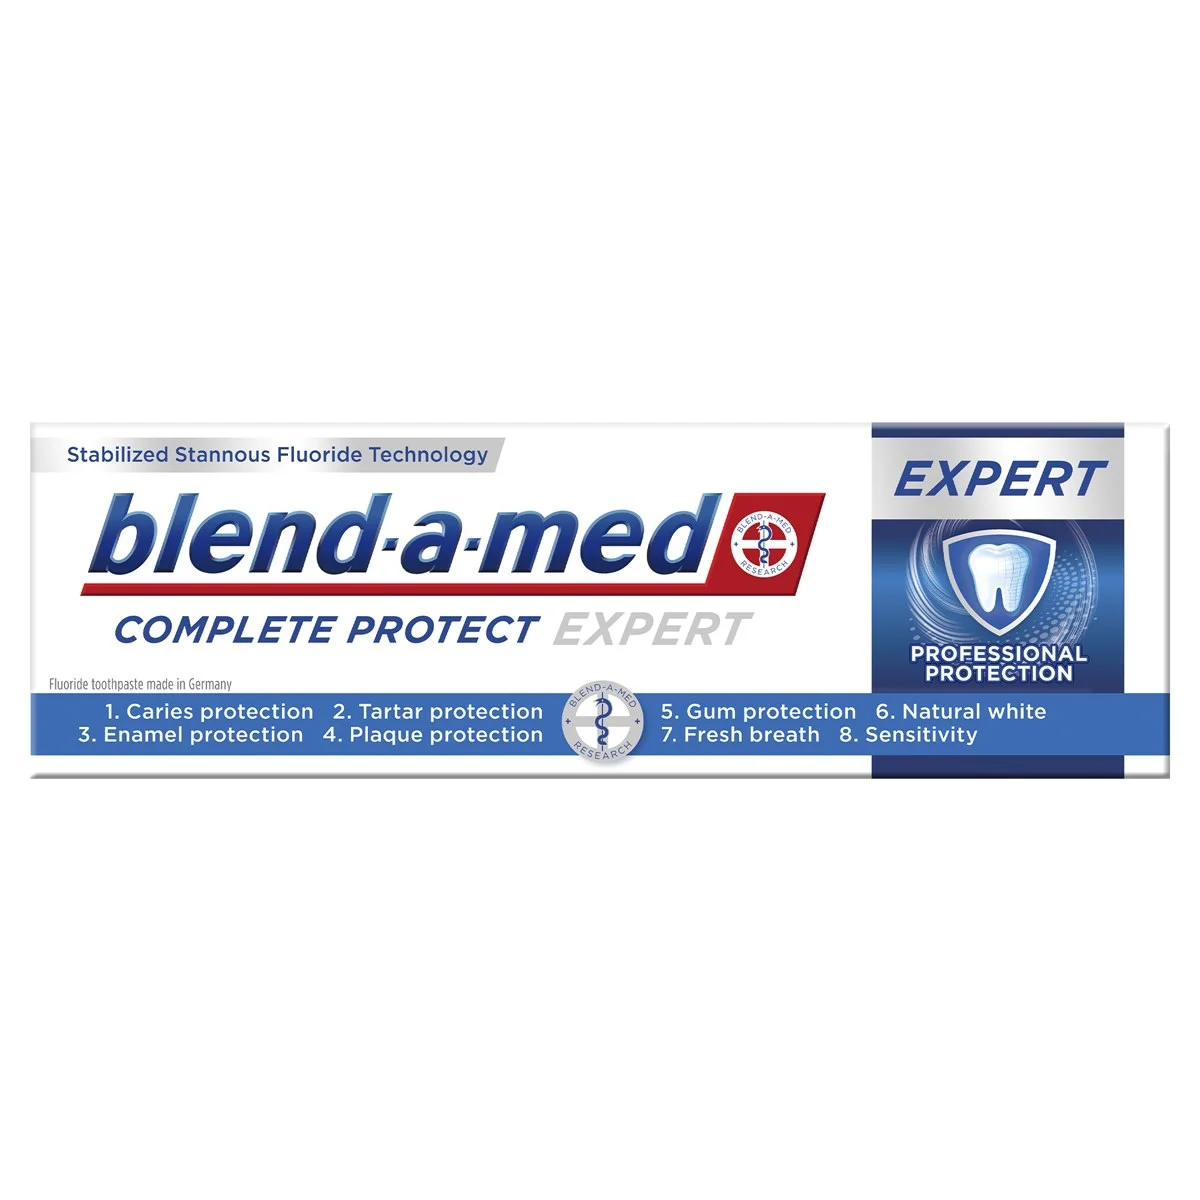 Blend-a-med Complete Protect Expert Professional Protection Fogkrém 